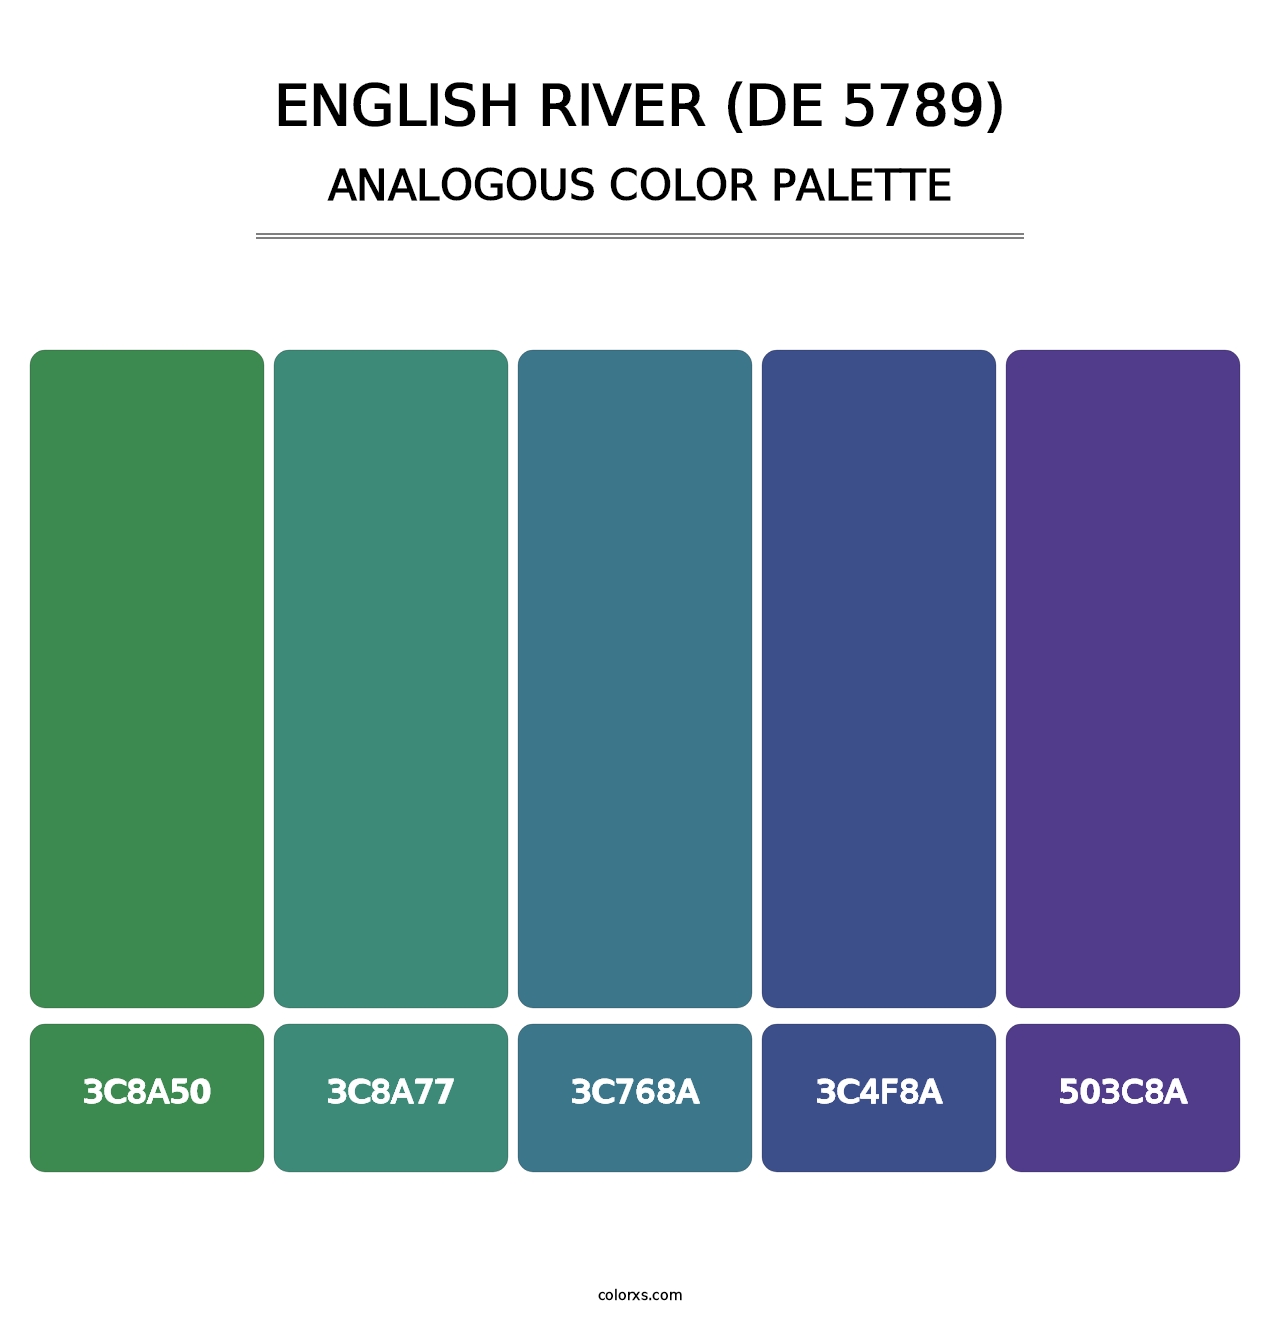 English River (DE 5789) - Analogous Color Palette